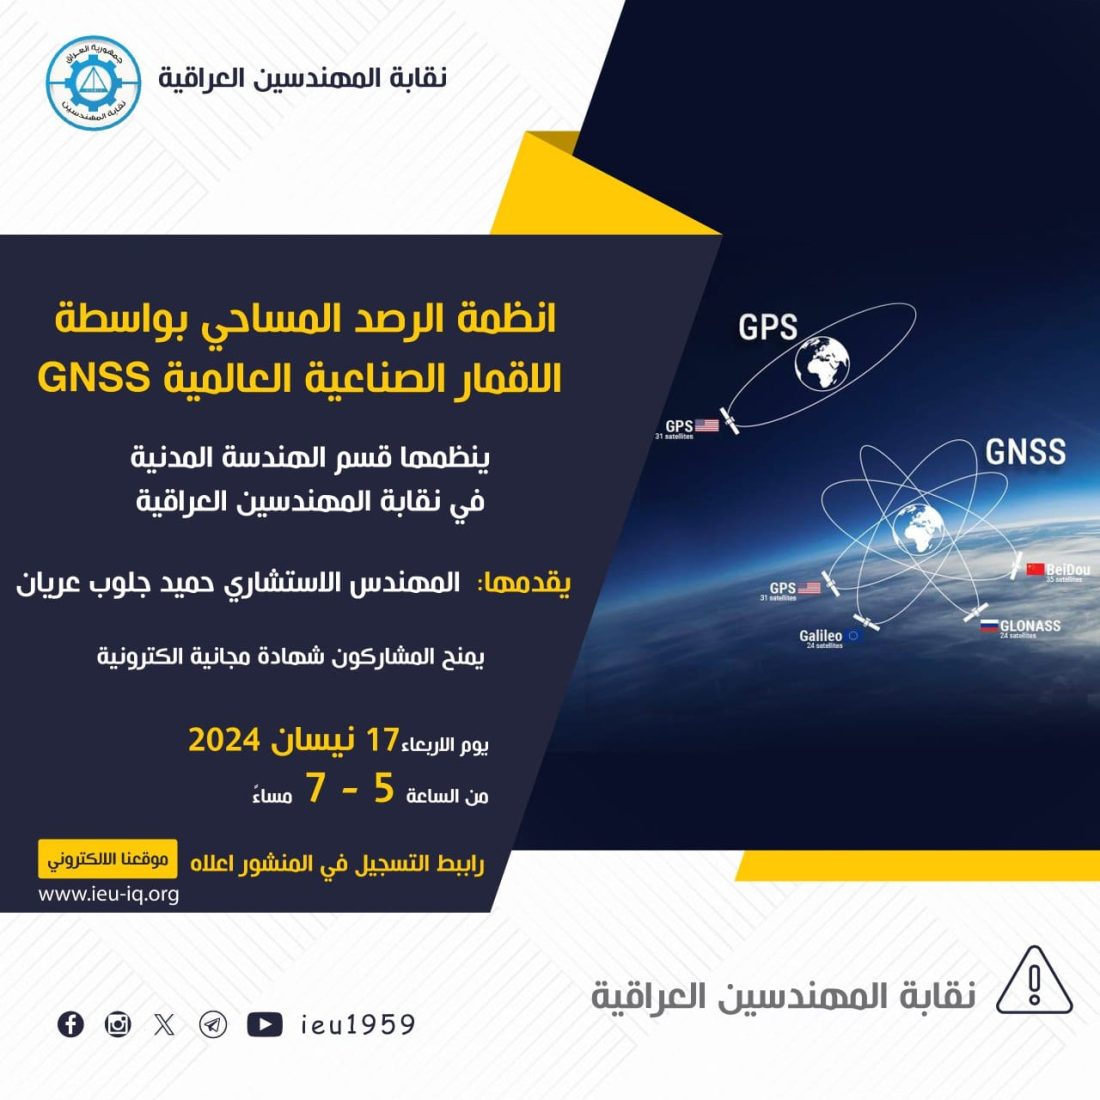 محاضرة تعريفية بعنوان (انظمة الرصد المساحي بواسطة الاقمار الصناعية العالمية “GNSS”)